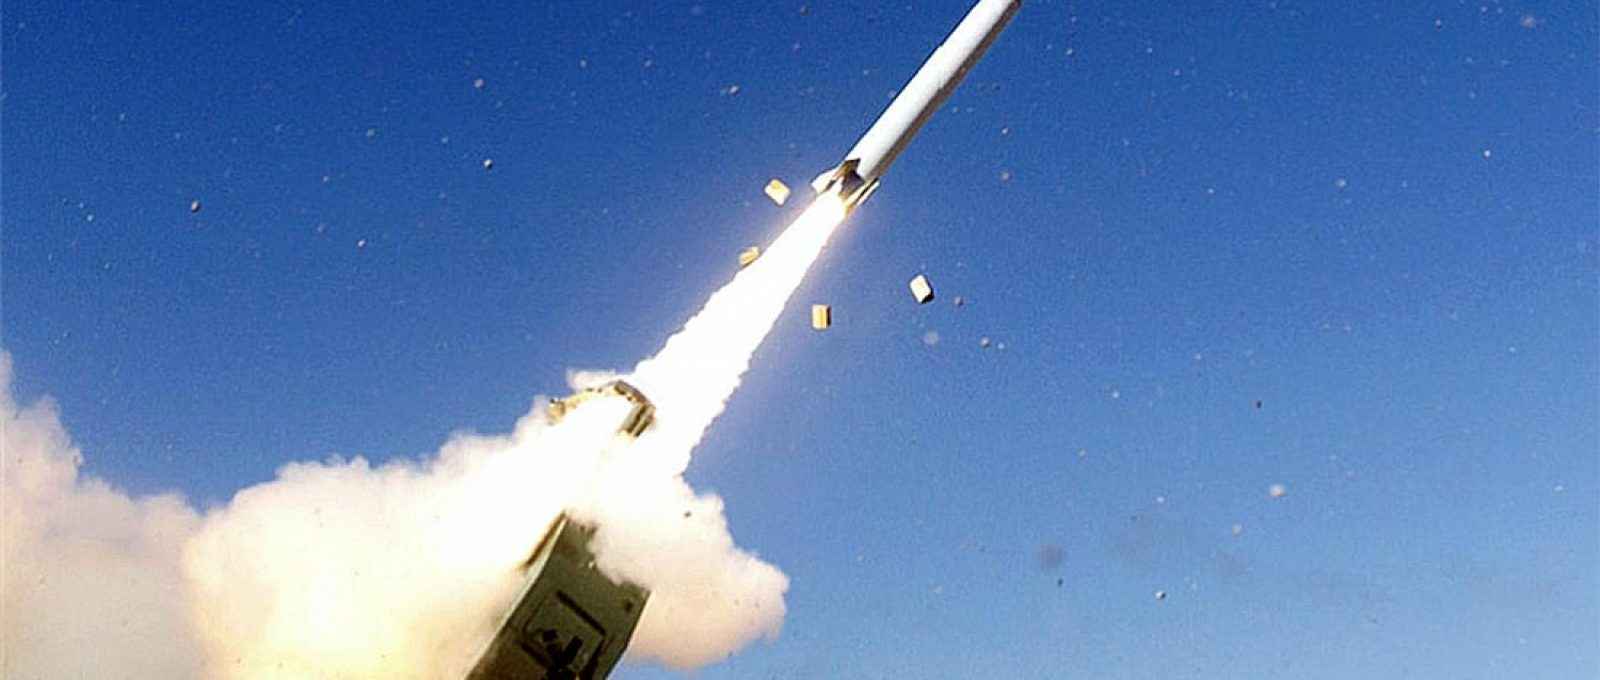 Míssil PrSM da Lockheed Martin foi testado pela terceira vez no White Sands Missile Range no Novo México em 30 de abril de 2020 (Foto: Lockheed Martin).